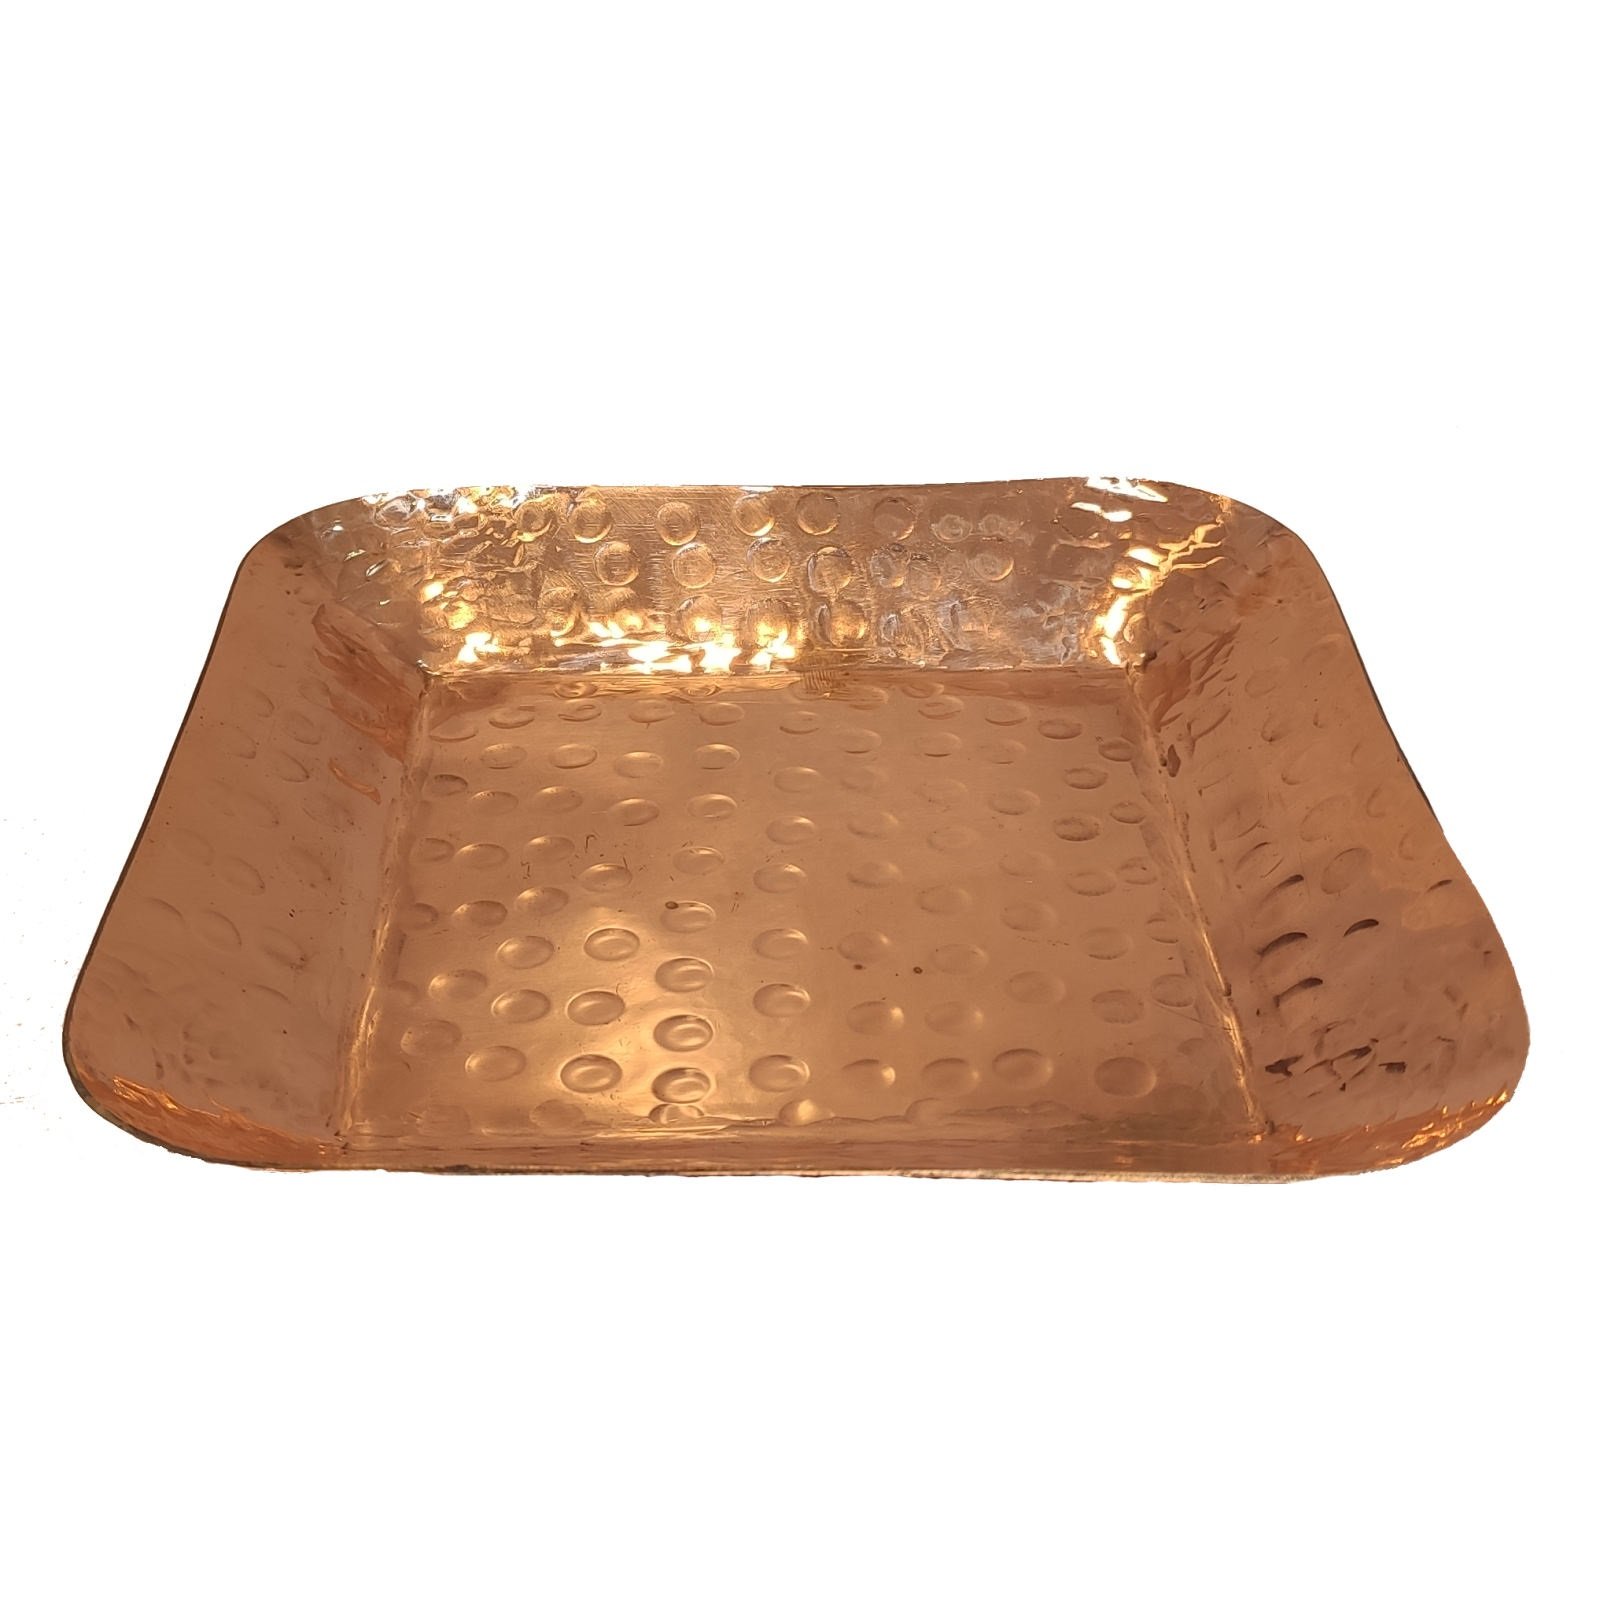 Handicraft Copper dish Code 20,buy copper handmades,buy copper handicrafts